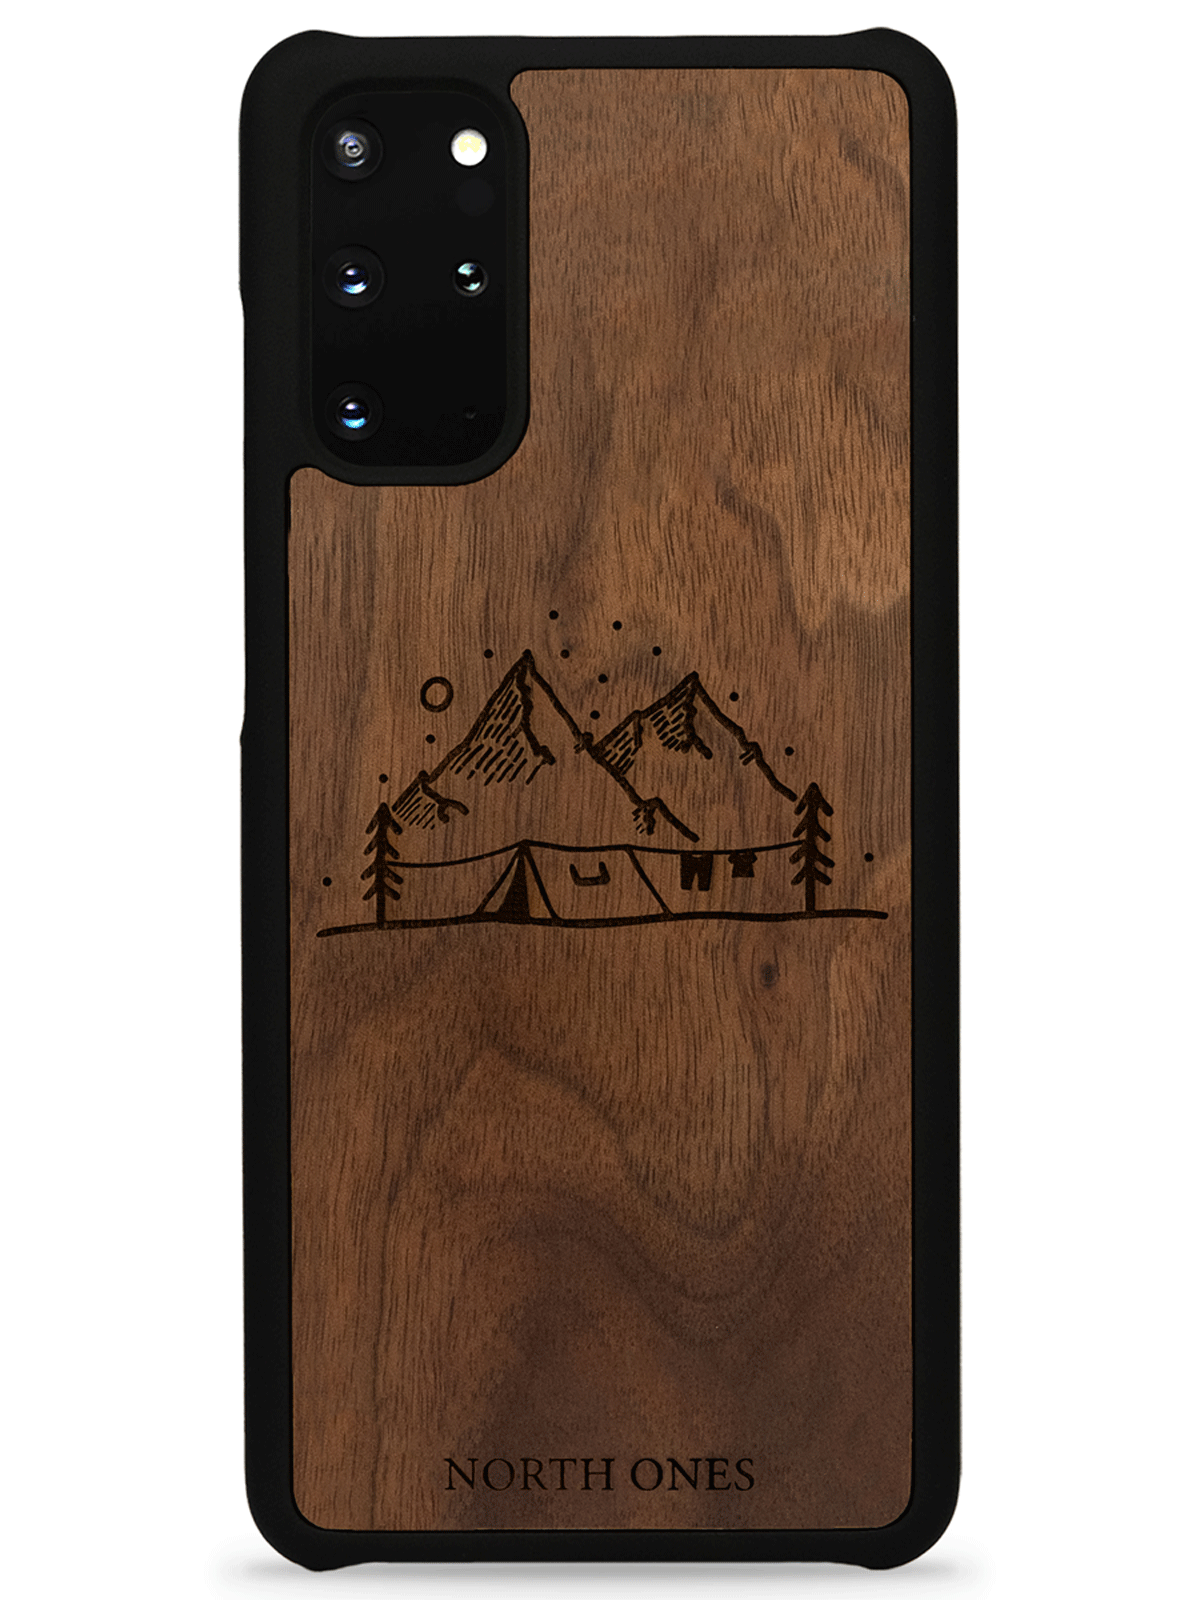 Mobilskal trä vildmark walnut inivildmarken edition Samsung galaxy S20+